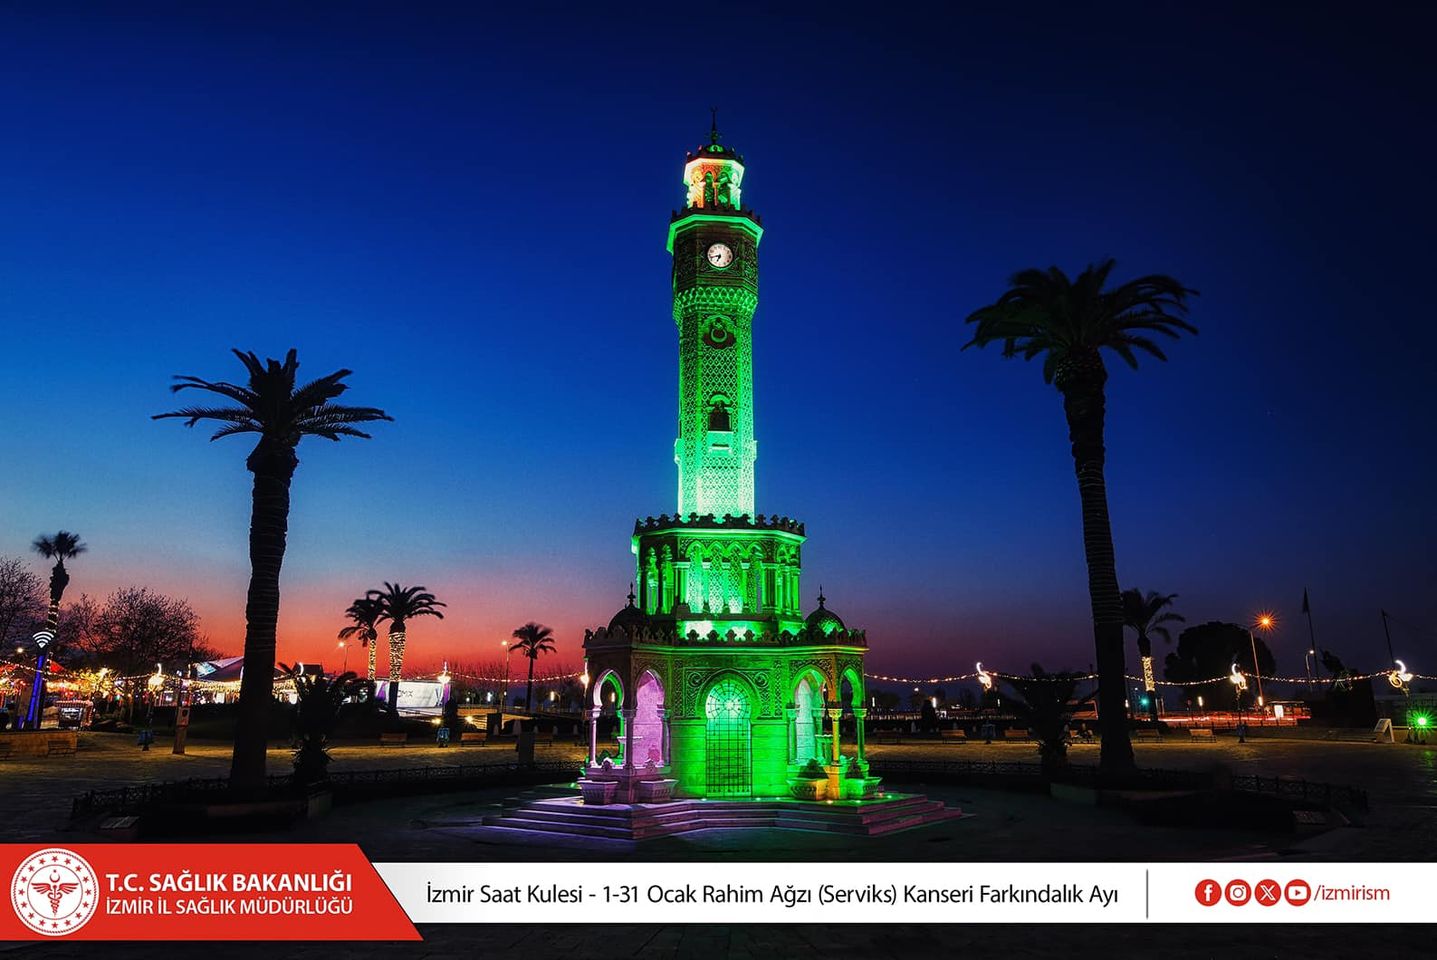 İzmir Saat Kulesi, Serviks Kanseri Farkındalık Ayı için yeşil ışıklarla aydınlatılıyor